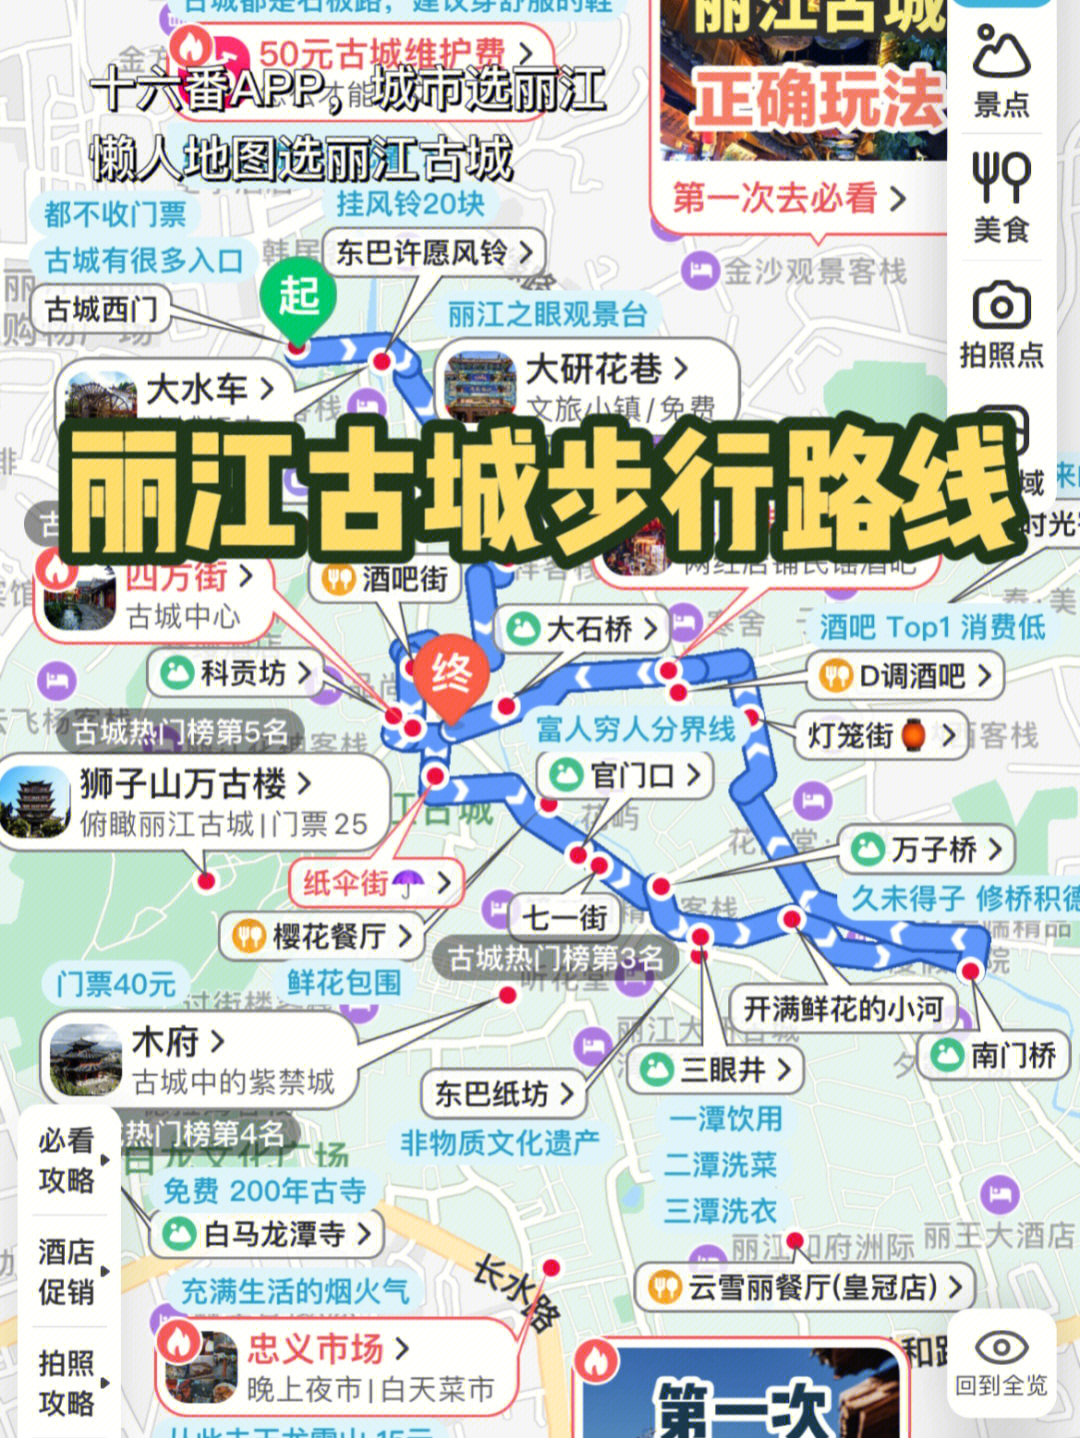 丽江古城地图导航图片